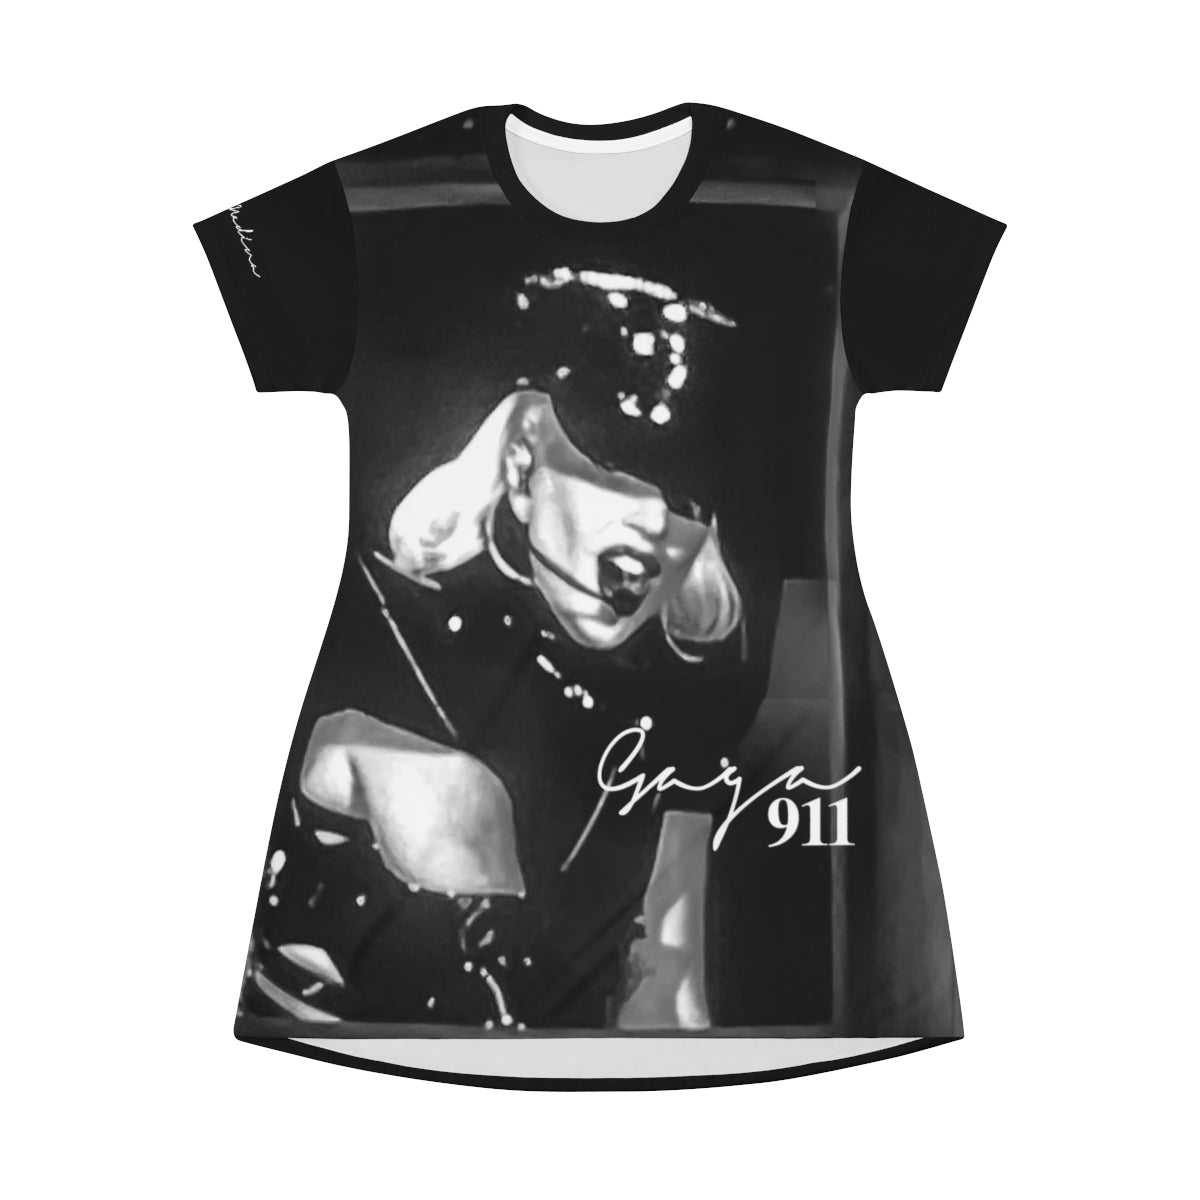 Shirtdress, Black Gaga 911